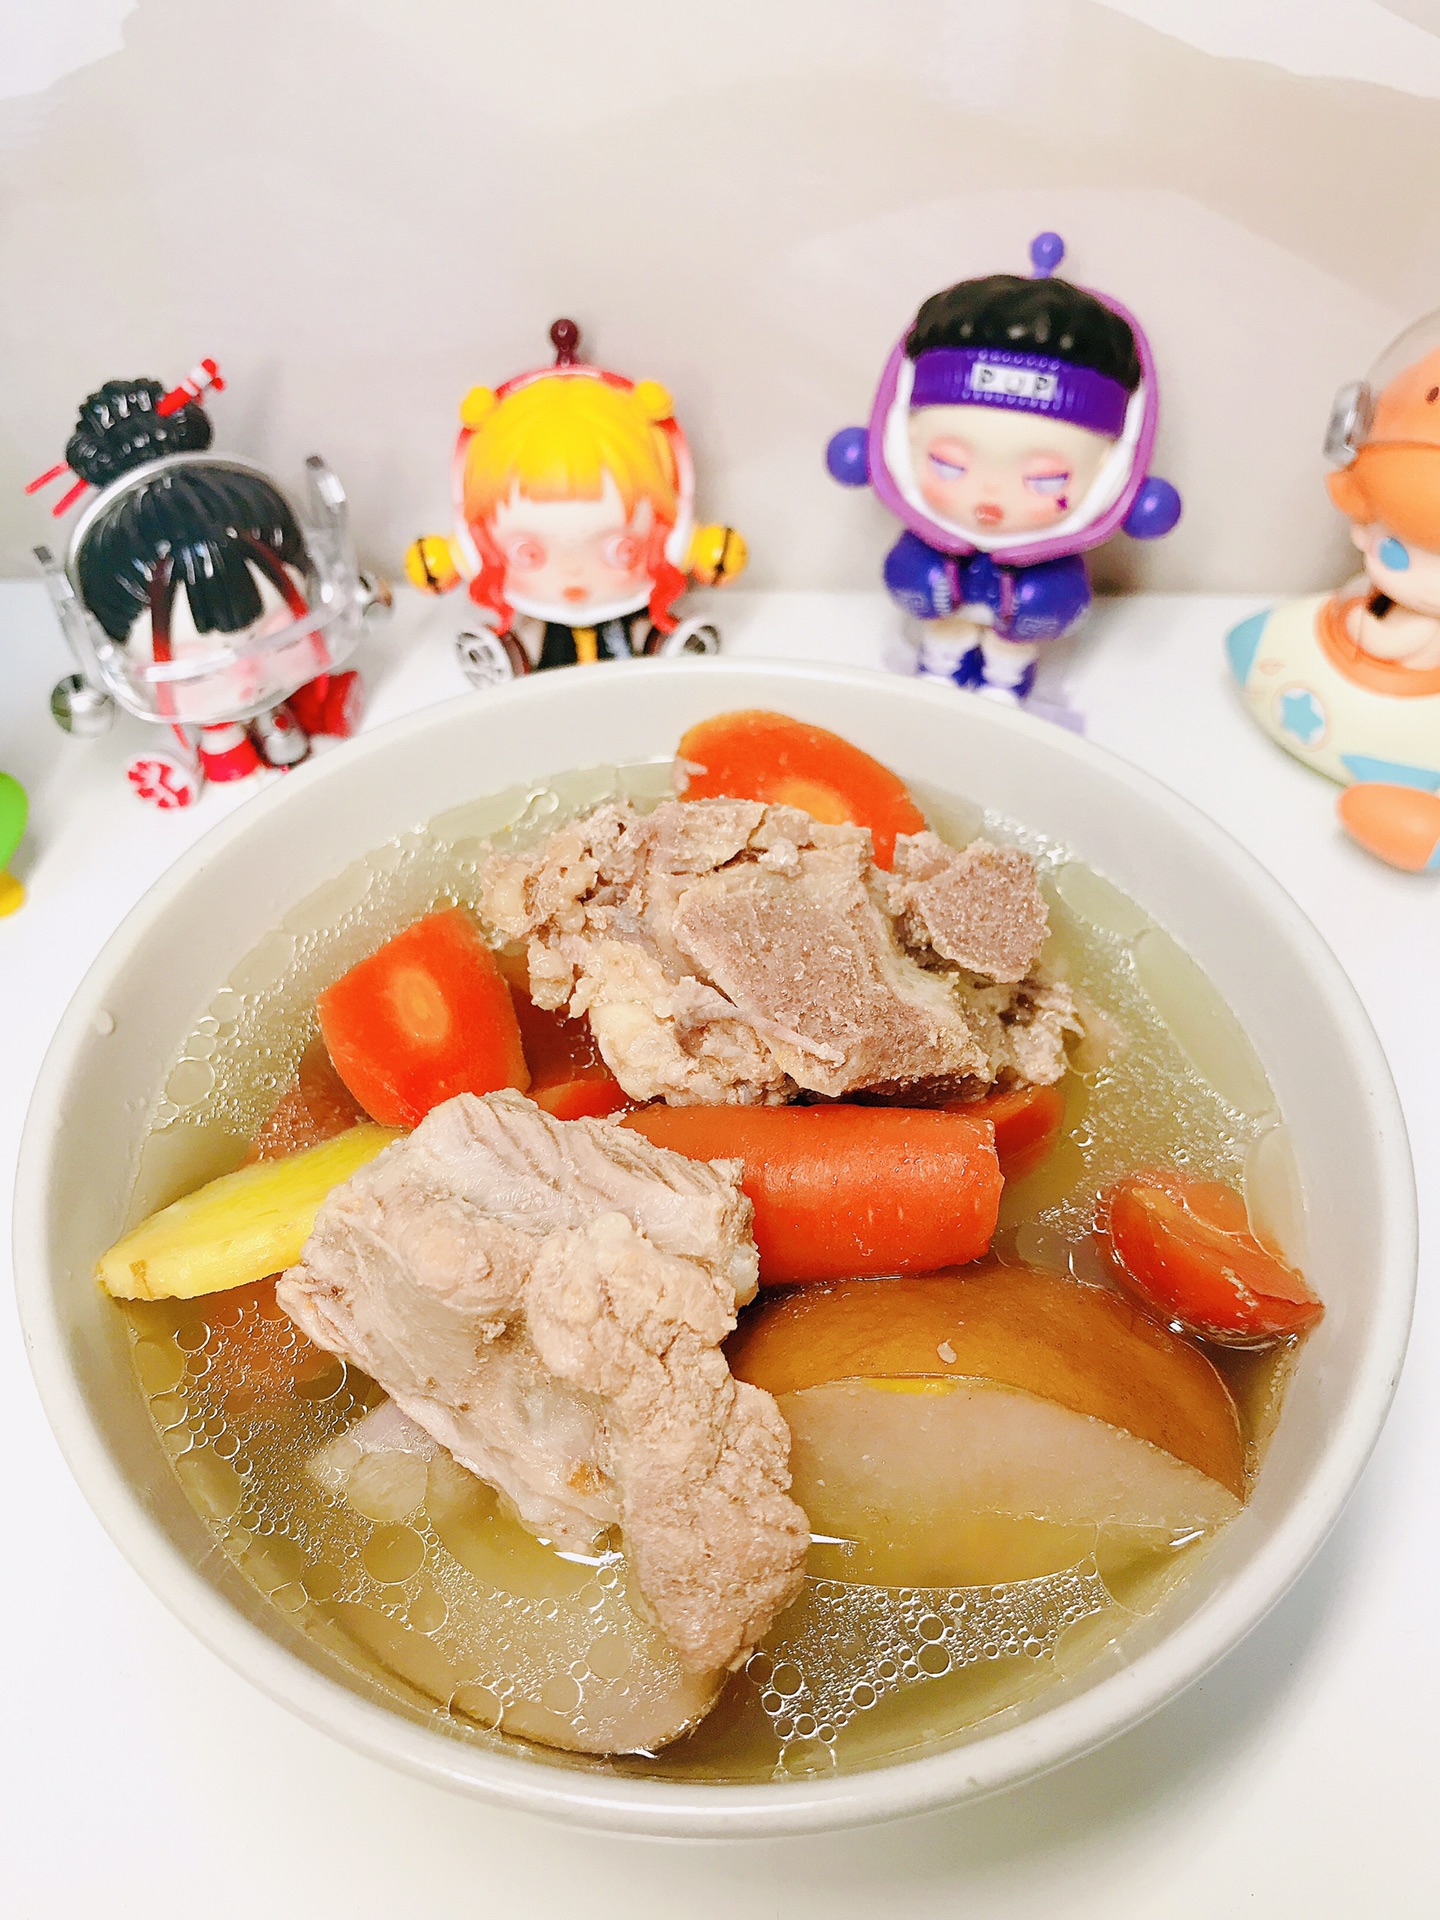 萝卜排骨汤,萝卜排骨汤的家常做法 - 美食杰萝卜排骨汤做法大全